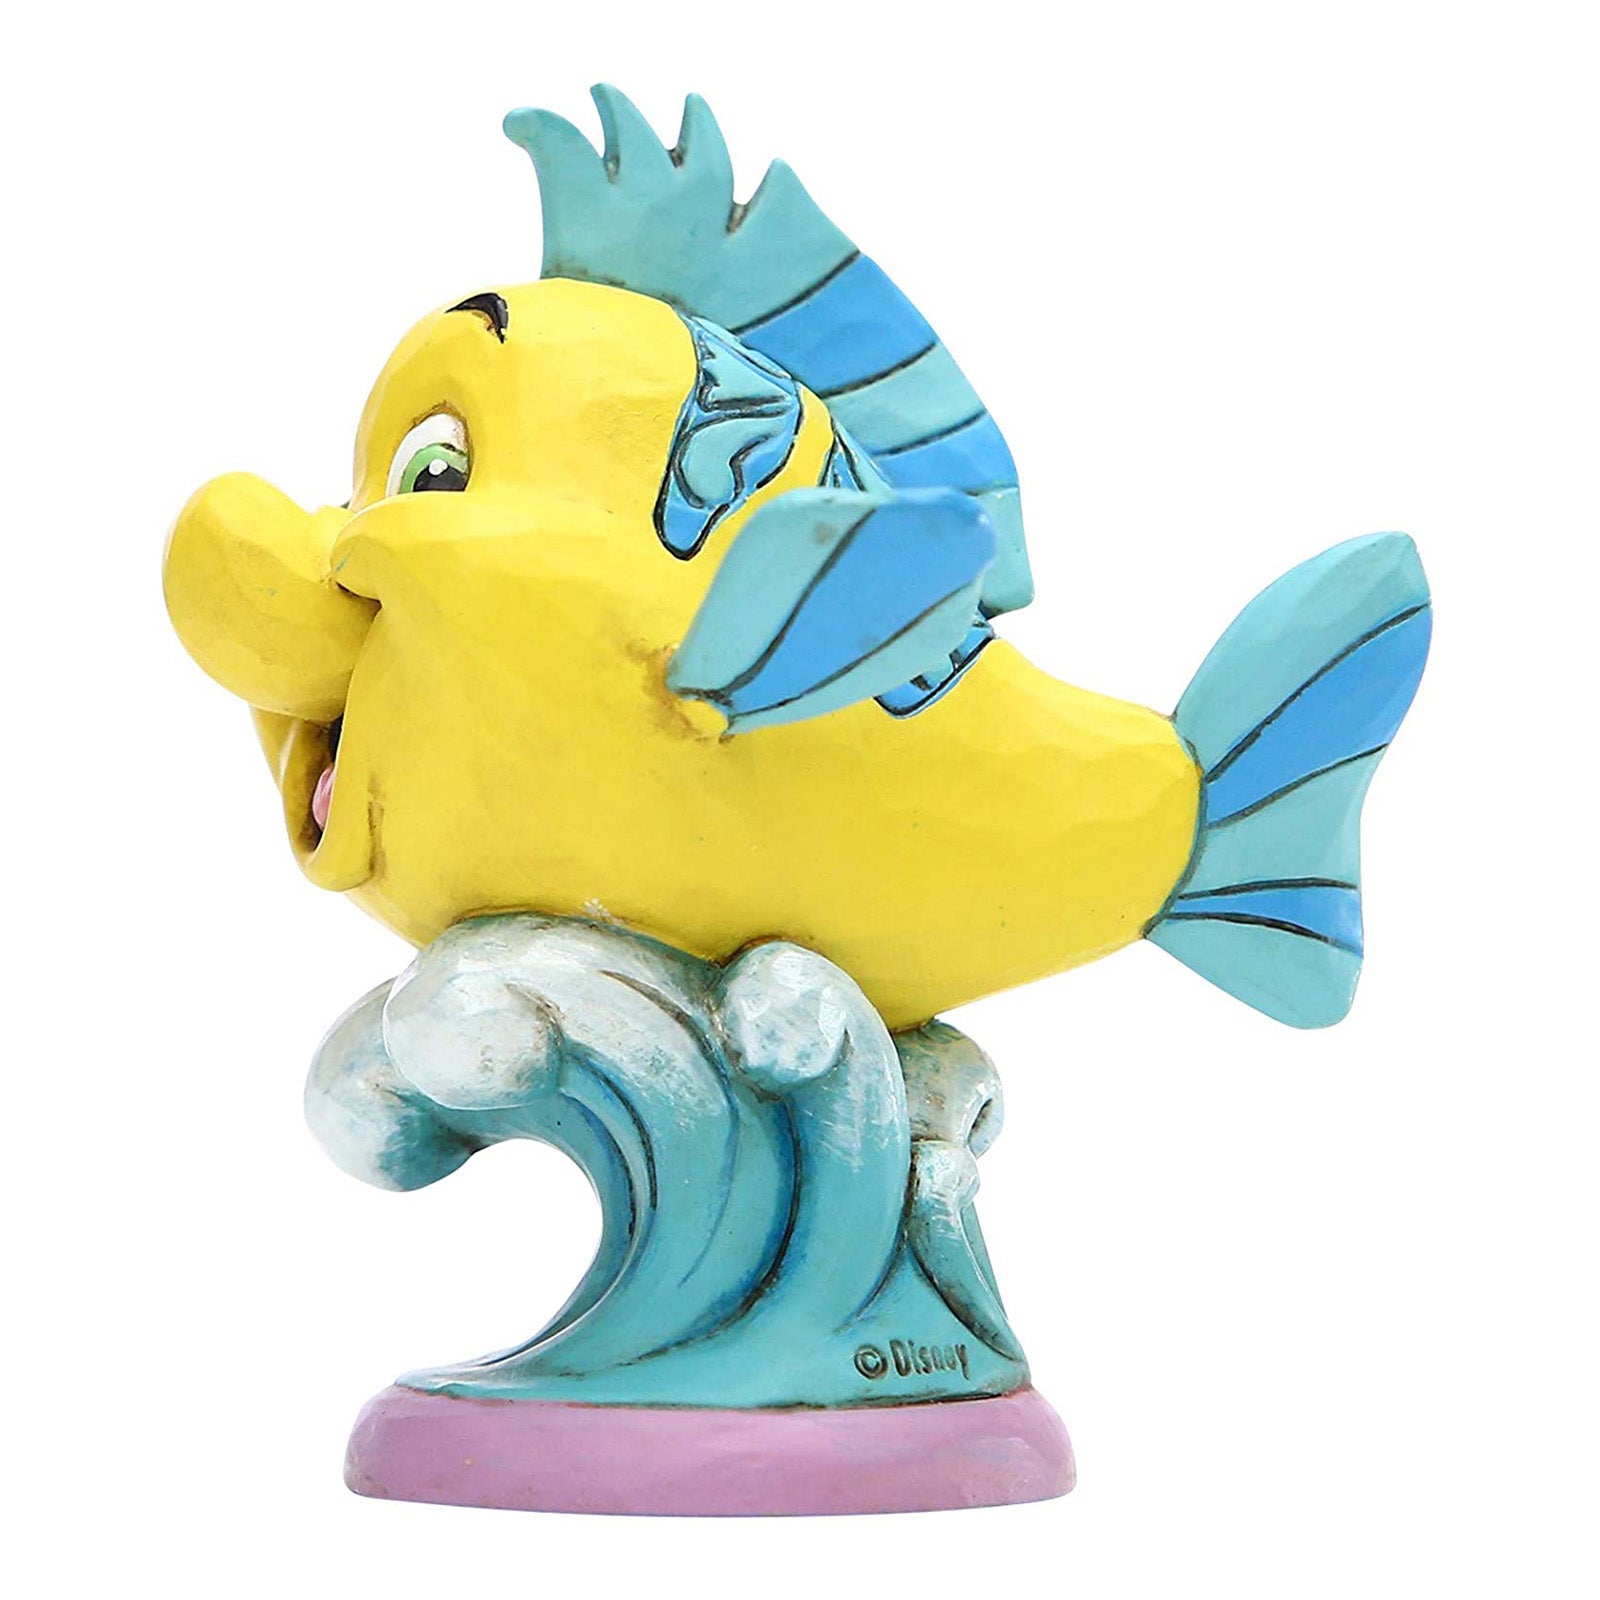 Enesco Disney Showcase Little Mermaid Flounder Go Fish Figurine, 1